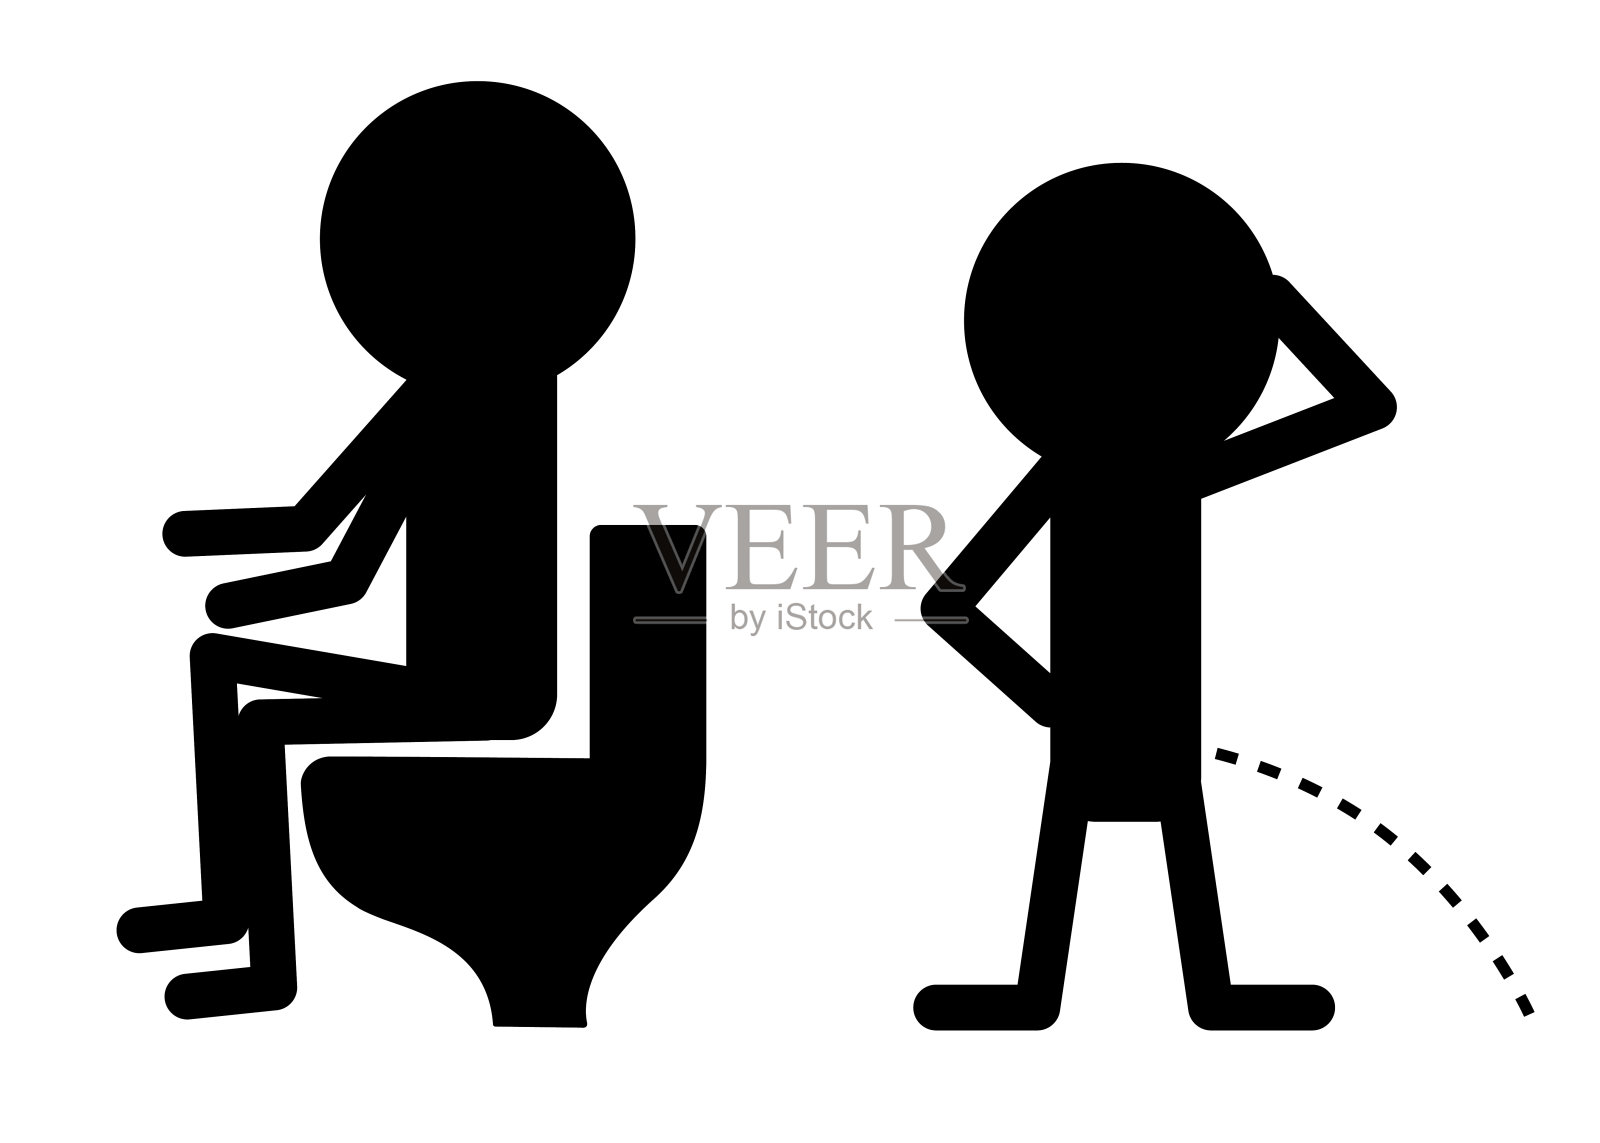 撒尿拉屎的男孩。男性性别图标集。厕所厕所门标志坐在马桶上。黑色轮廓象形图。绅士的数字。平面设计。孤立。白色背景。插画图片素材